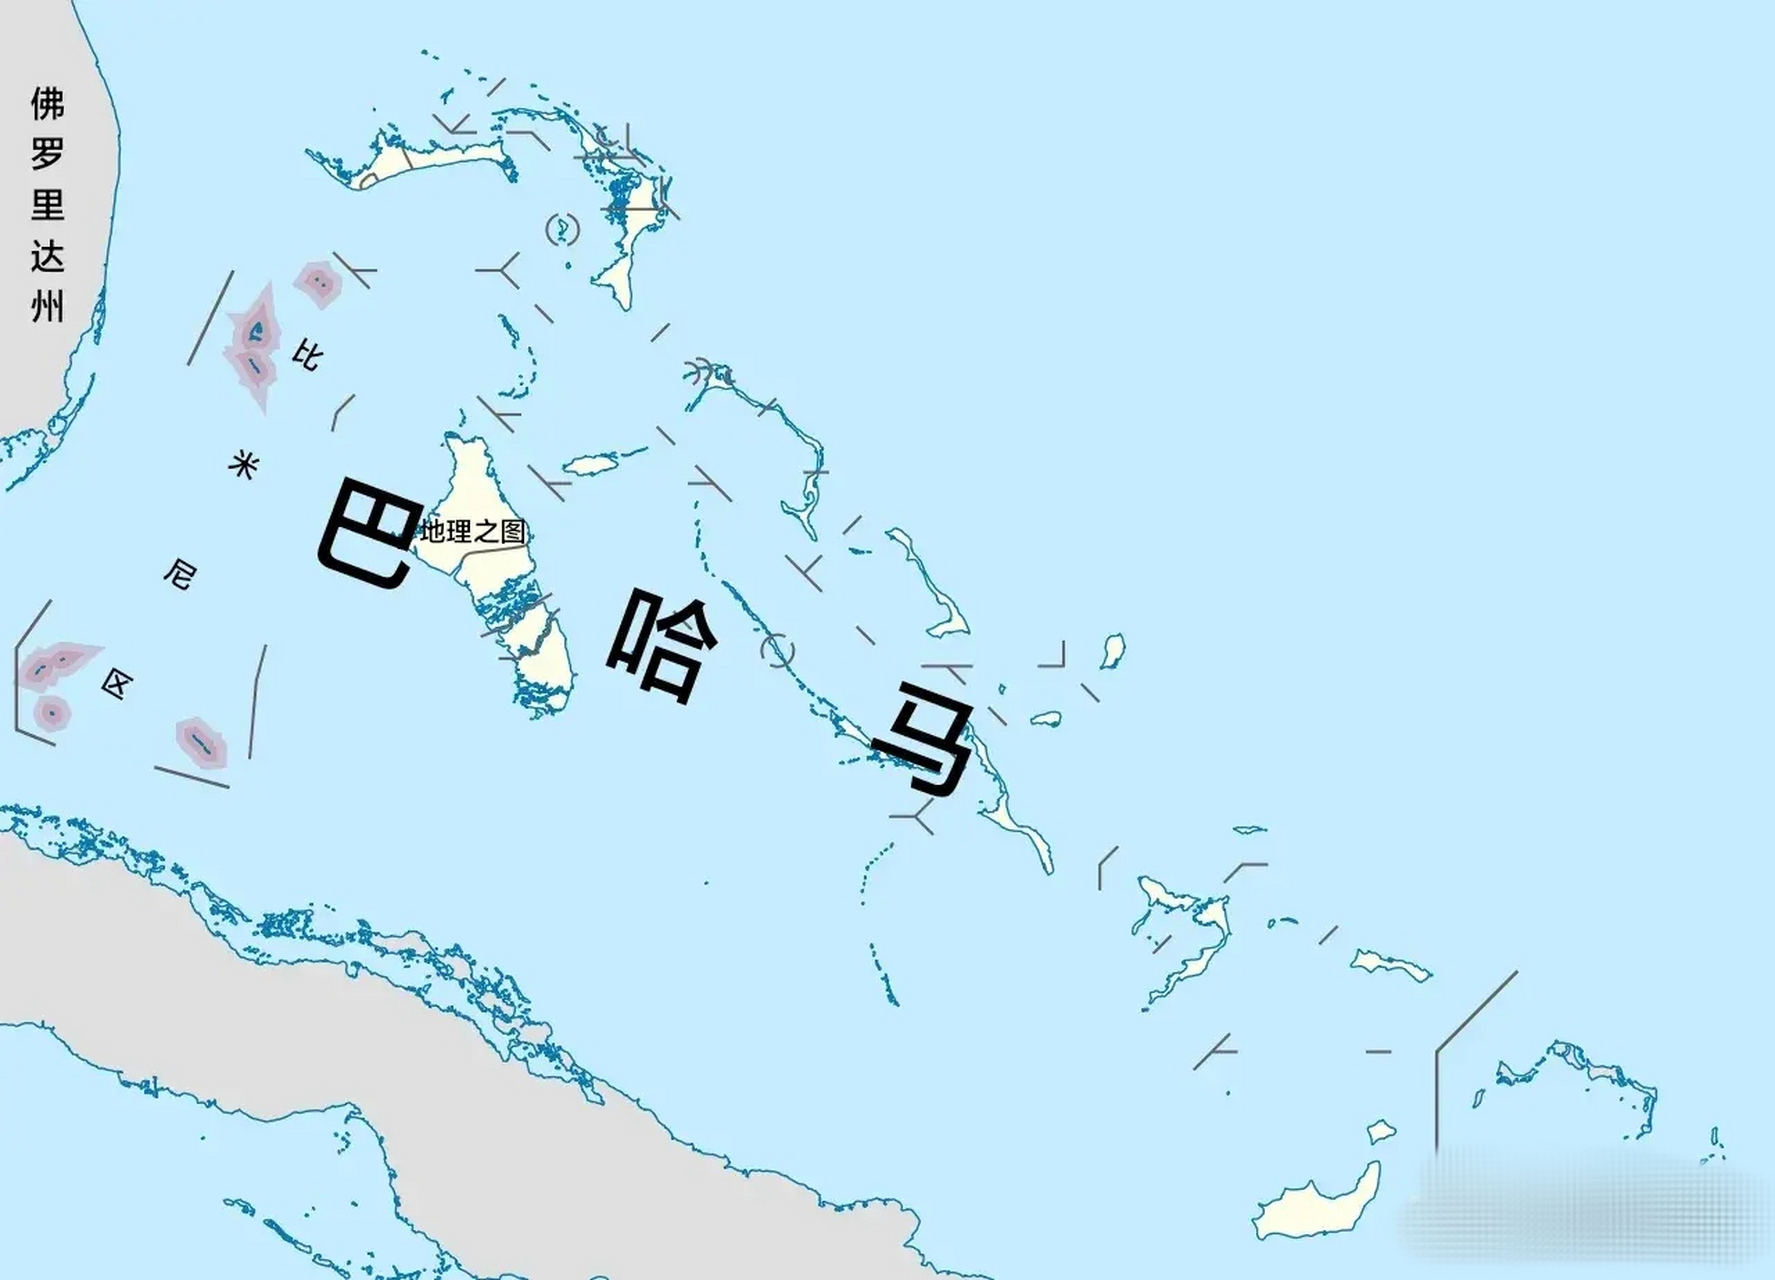 巴哈马群岛国家图片